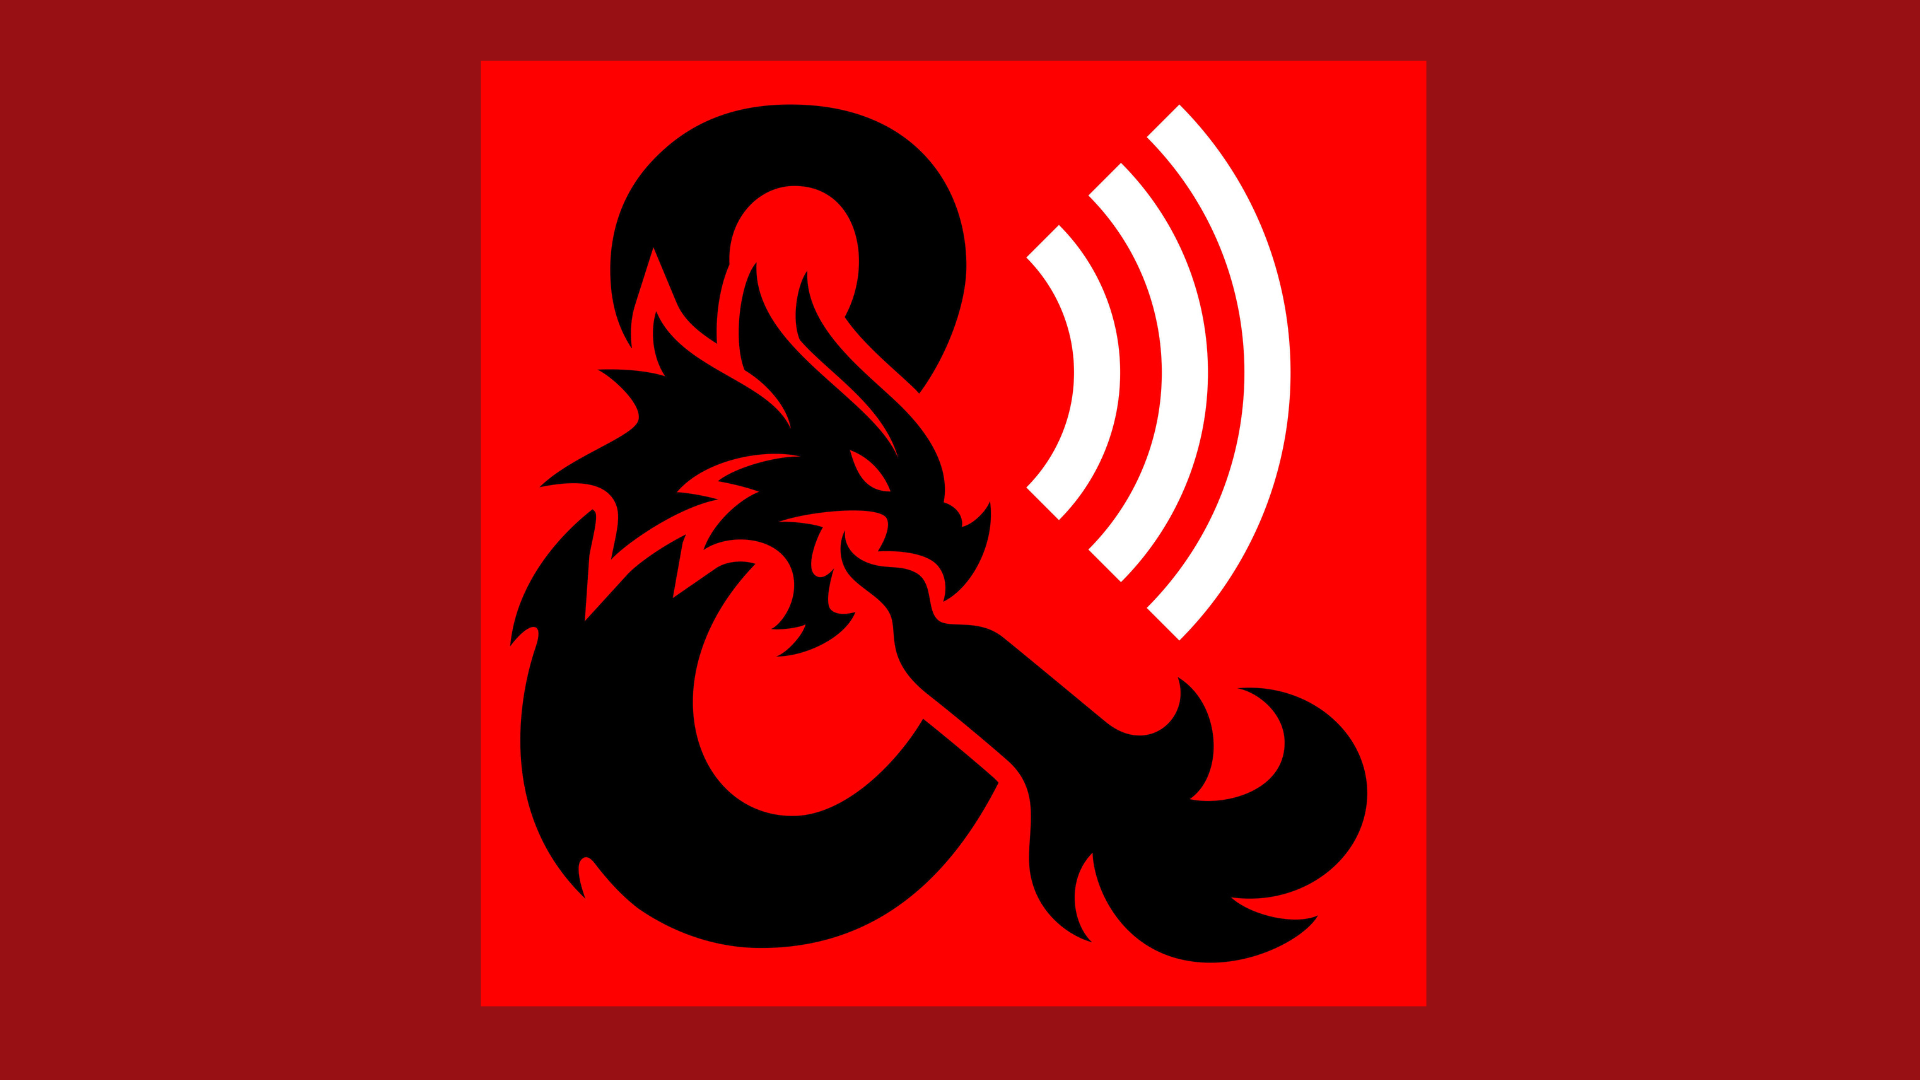 Image: Podcast logo